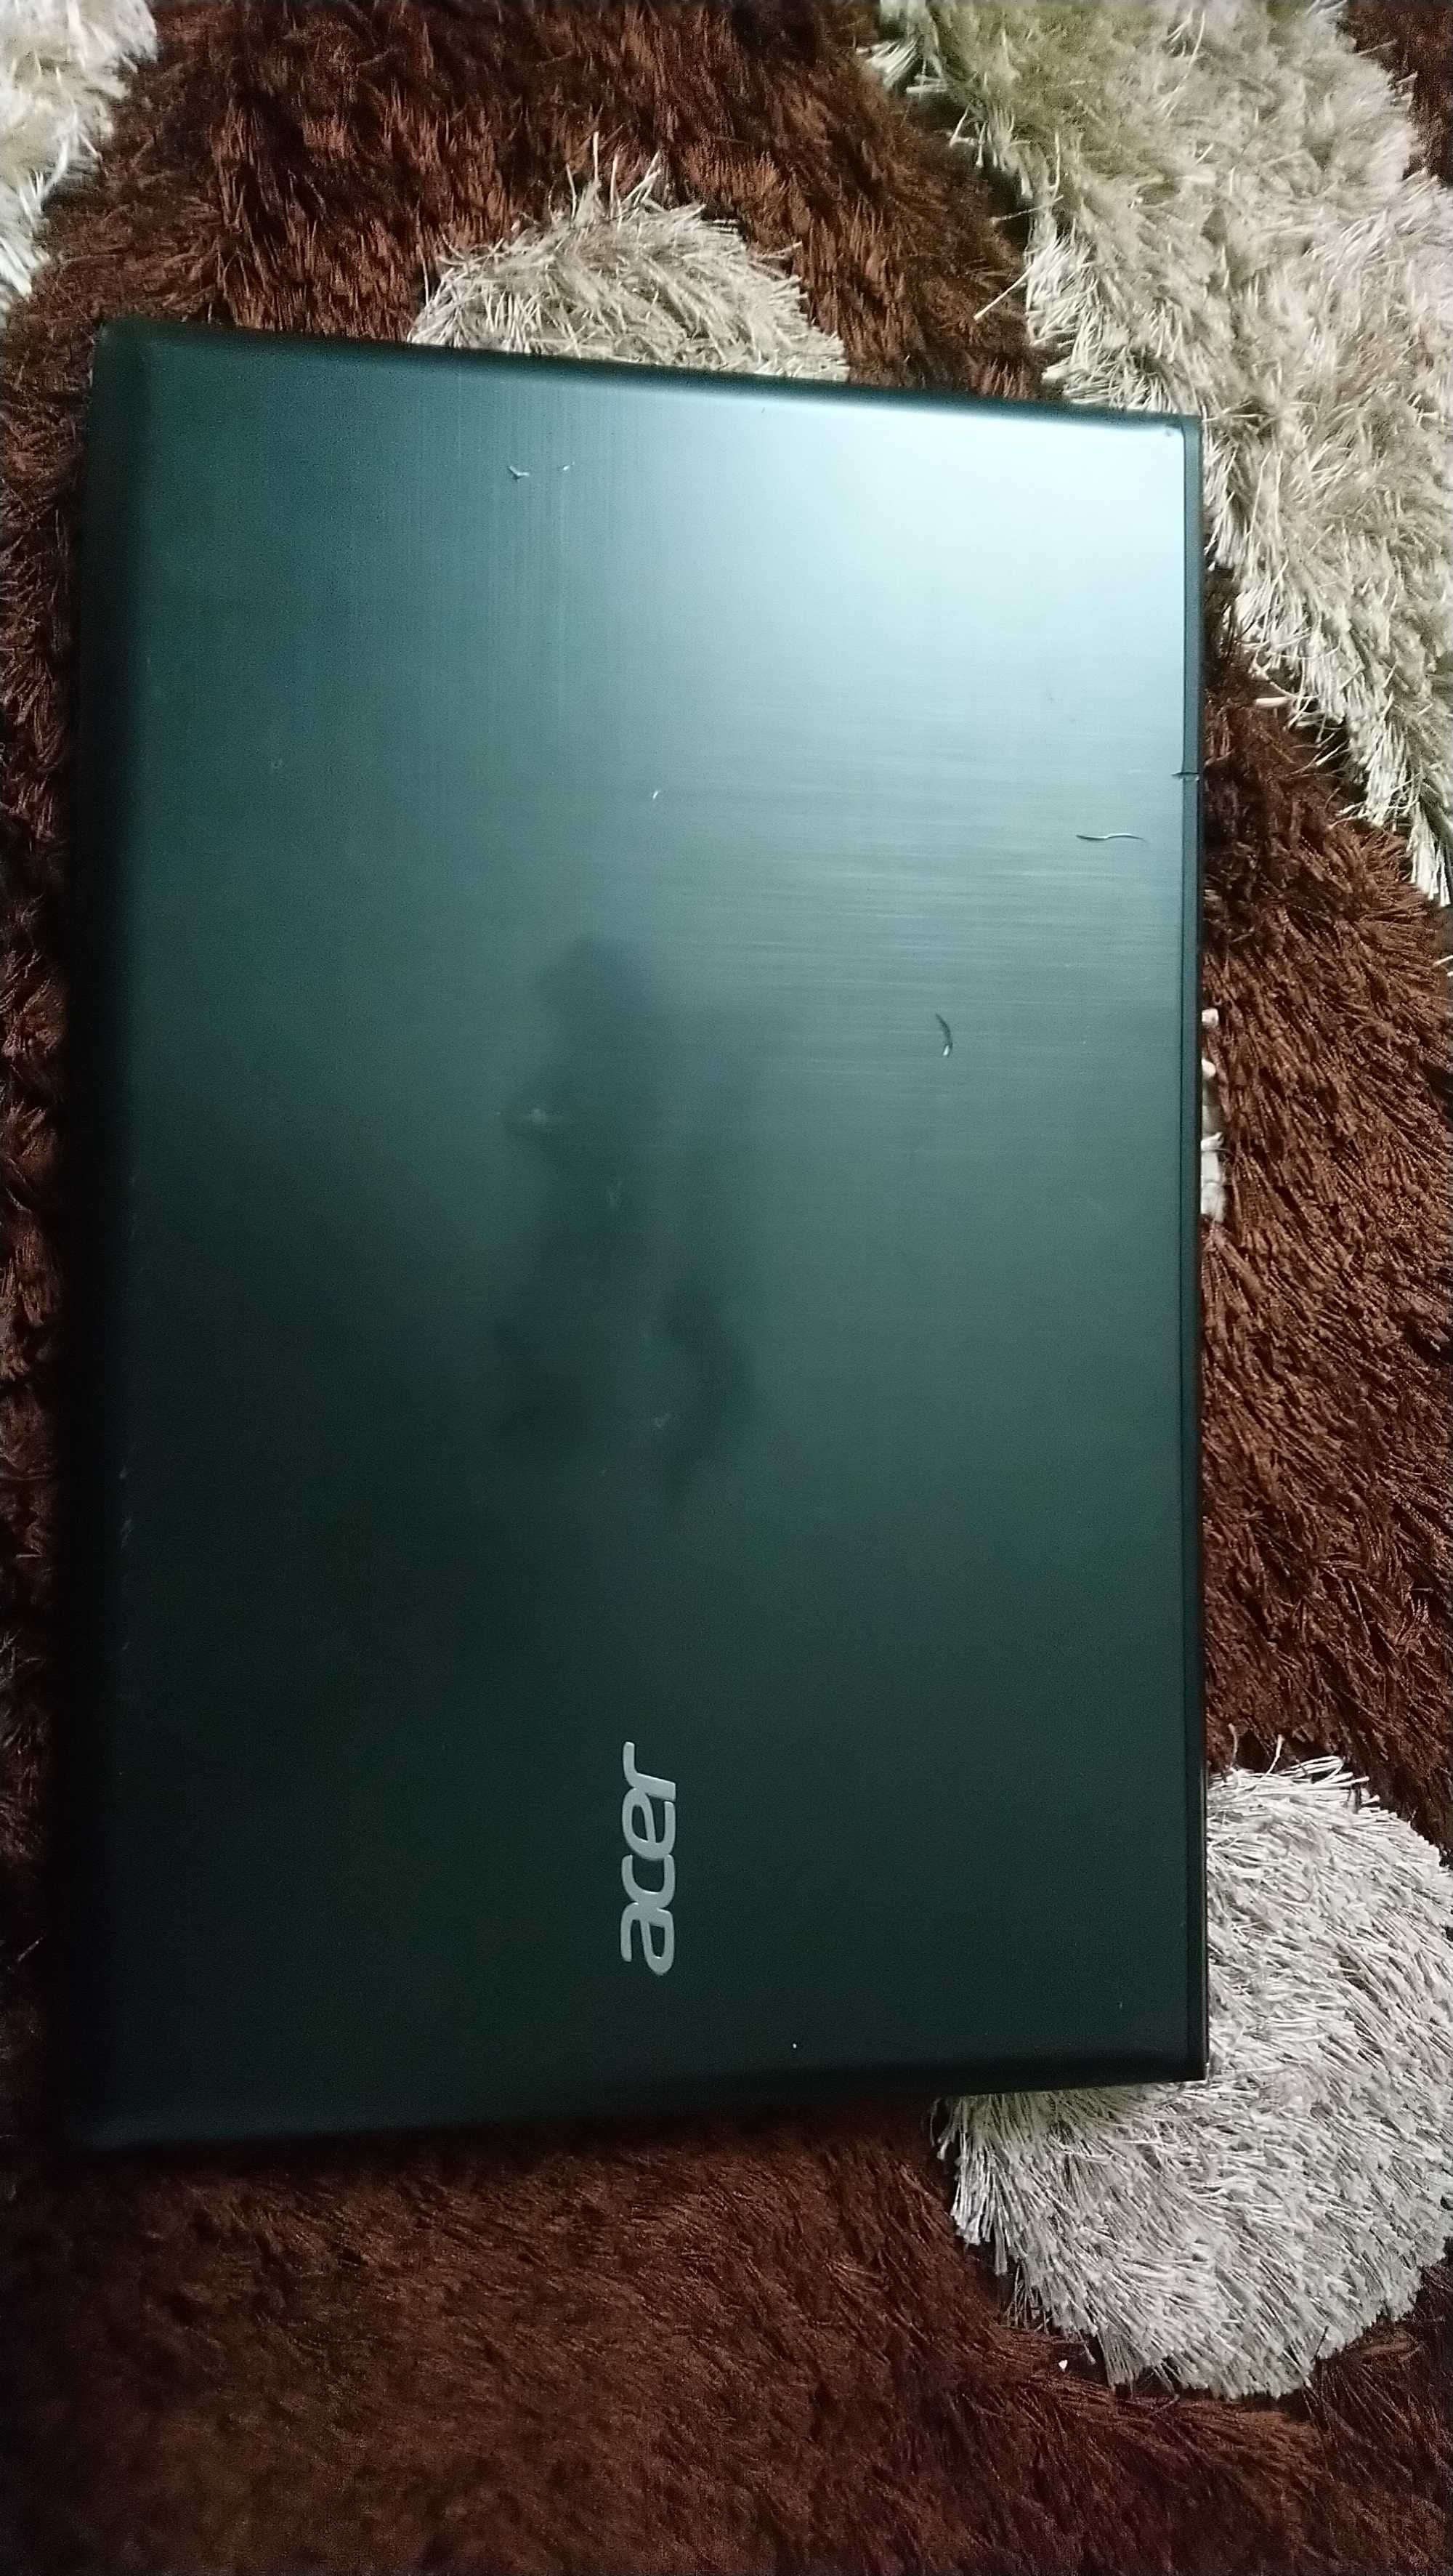 Acer E5-774G, i5-7200U, Nvidia 940MX, Samsung Evo 850 250 Gb